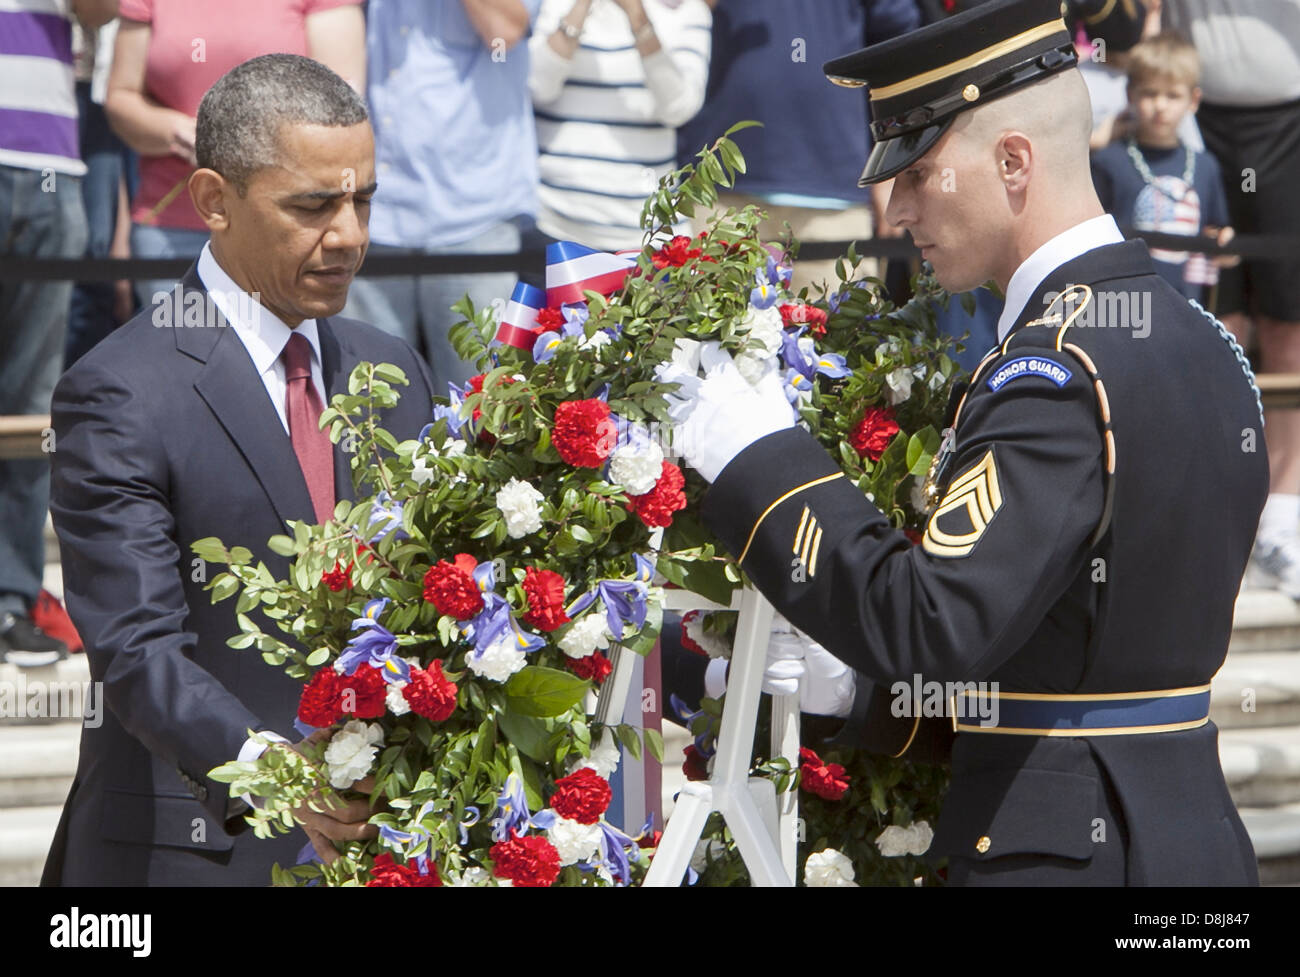 US-Präsident Barack Obama legt einen Kranz auf das Grab des unbekannten Soldaten zu Ehren des Memorial Day auf dem Arlington National Cemetery 27. Mai 2013 in Arlington, VA. Stockfoto